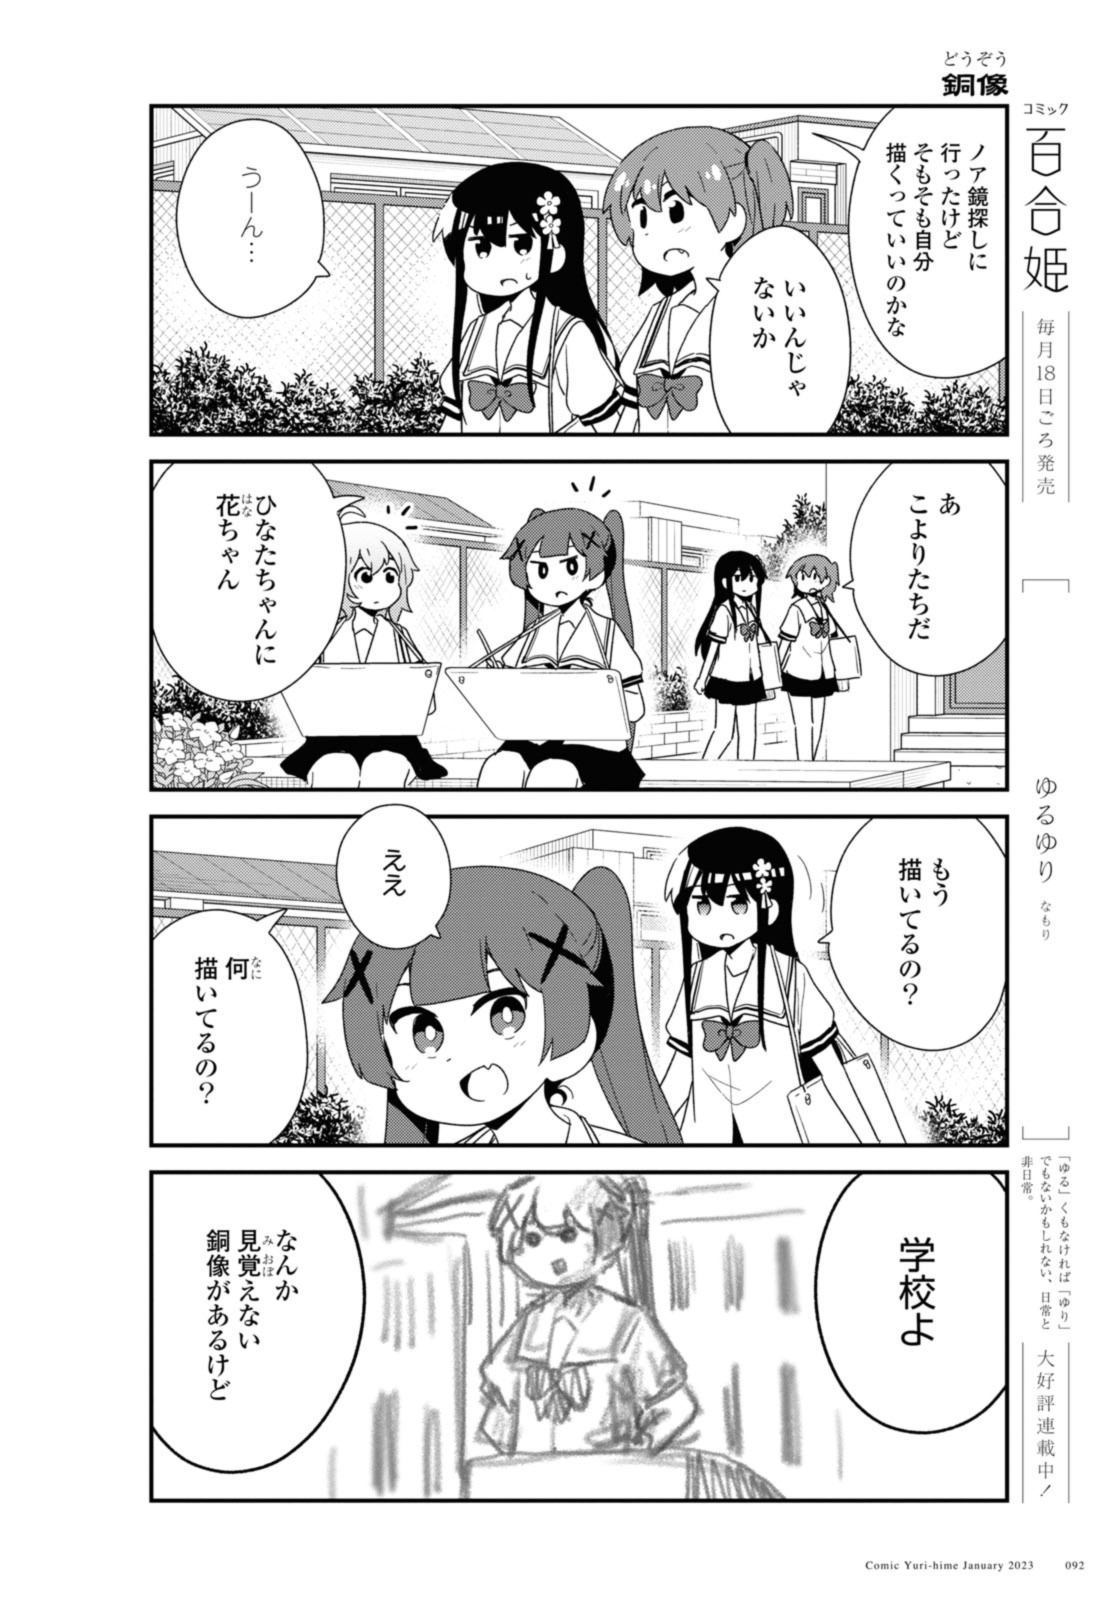 Watashi ni Tenshi ga Maiorita! - Chapter 101 - Page 4